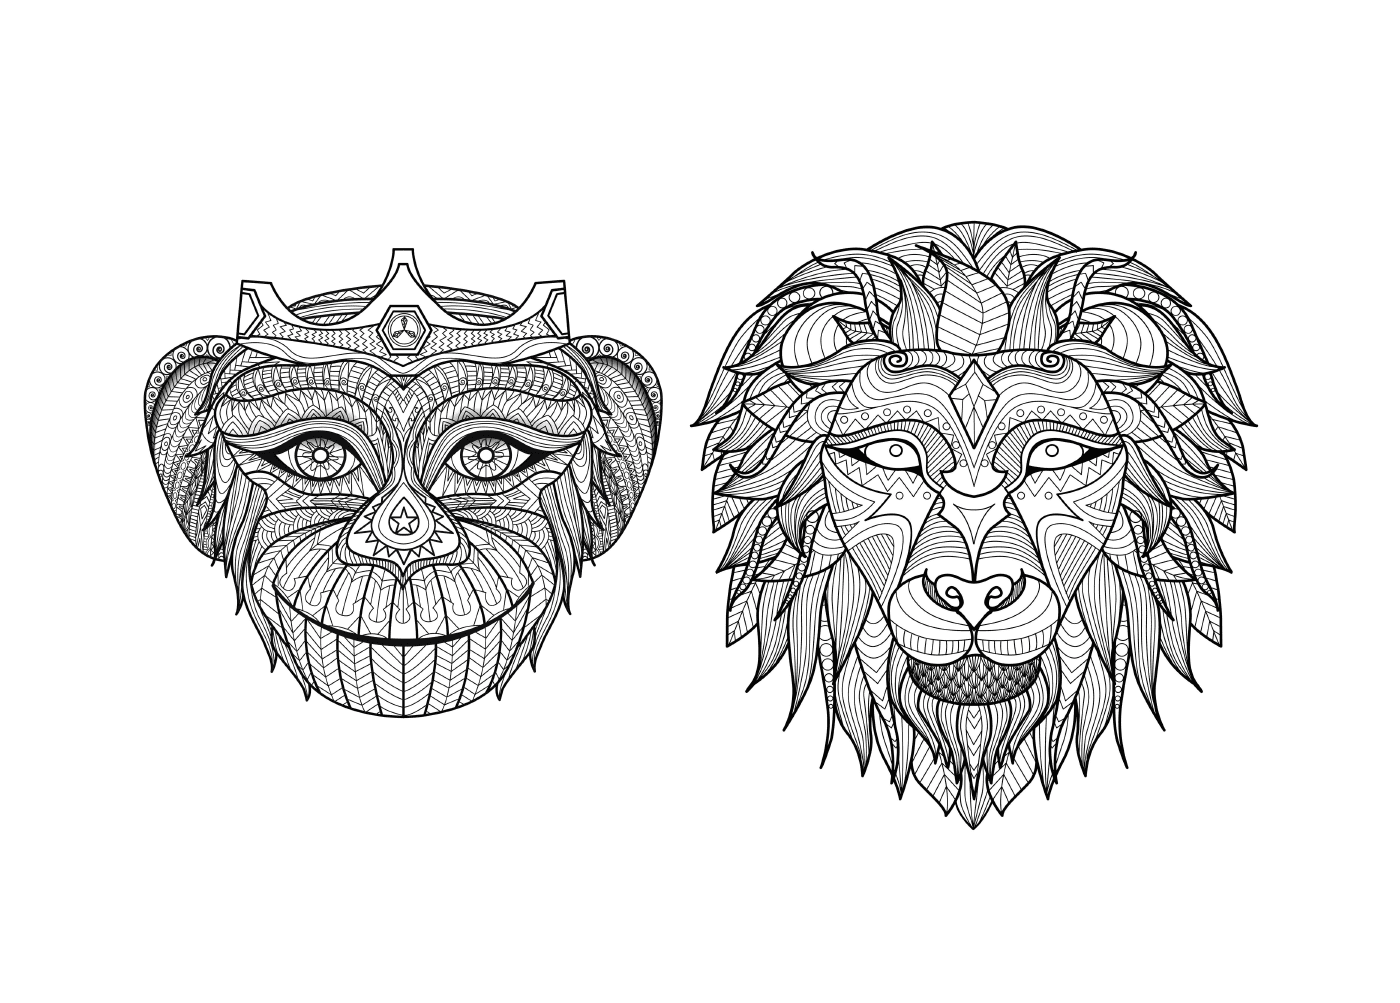  Dois desenhos em preto e branco de um leão e um macaco 